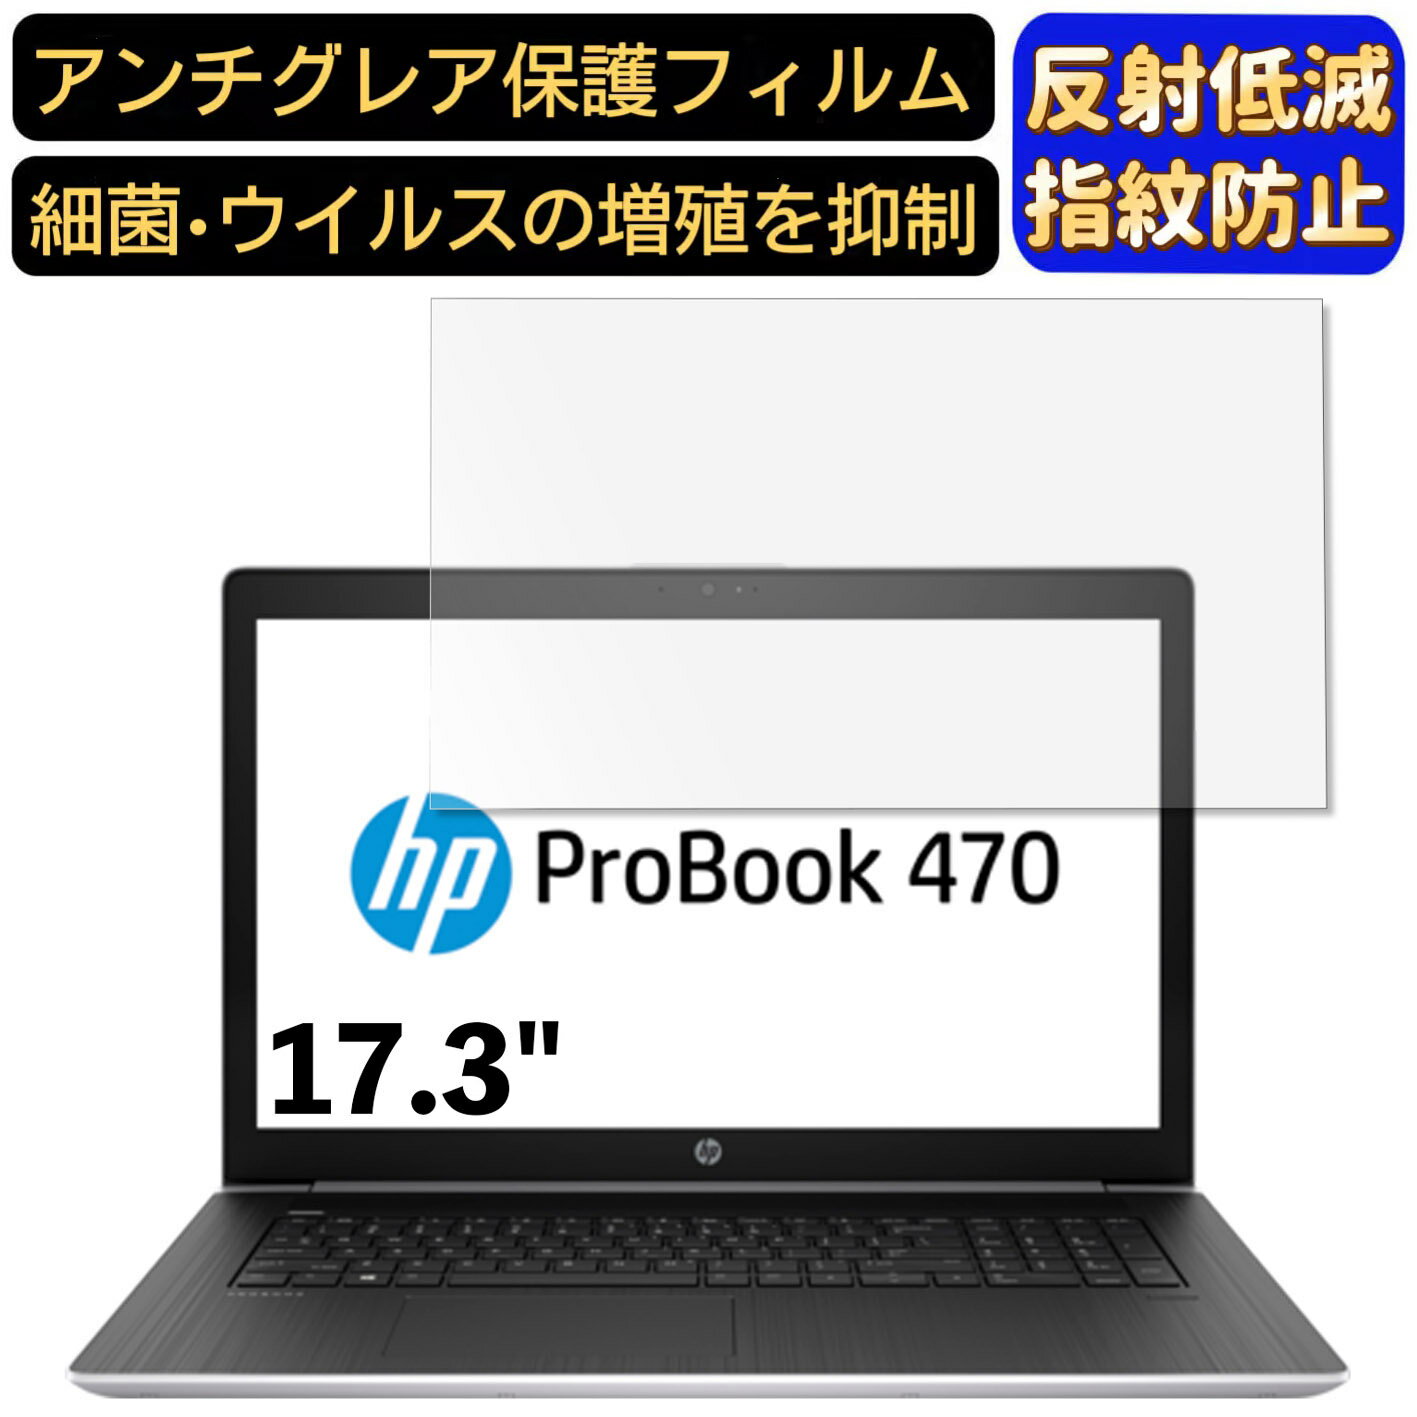 【ポイント2倍】HP ProBook 470 G5 Notebook